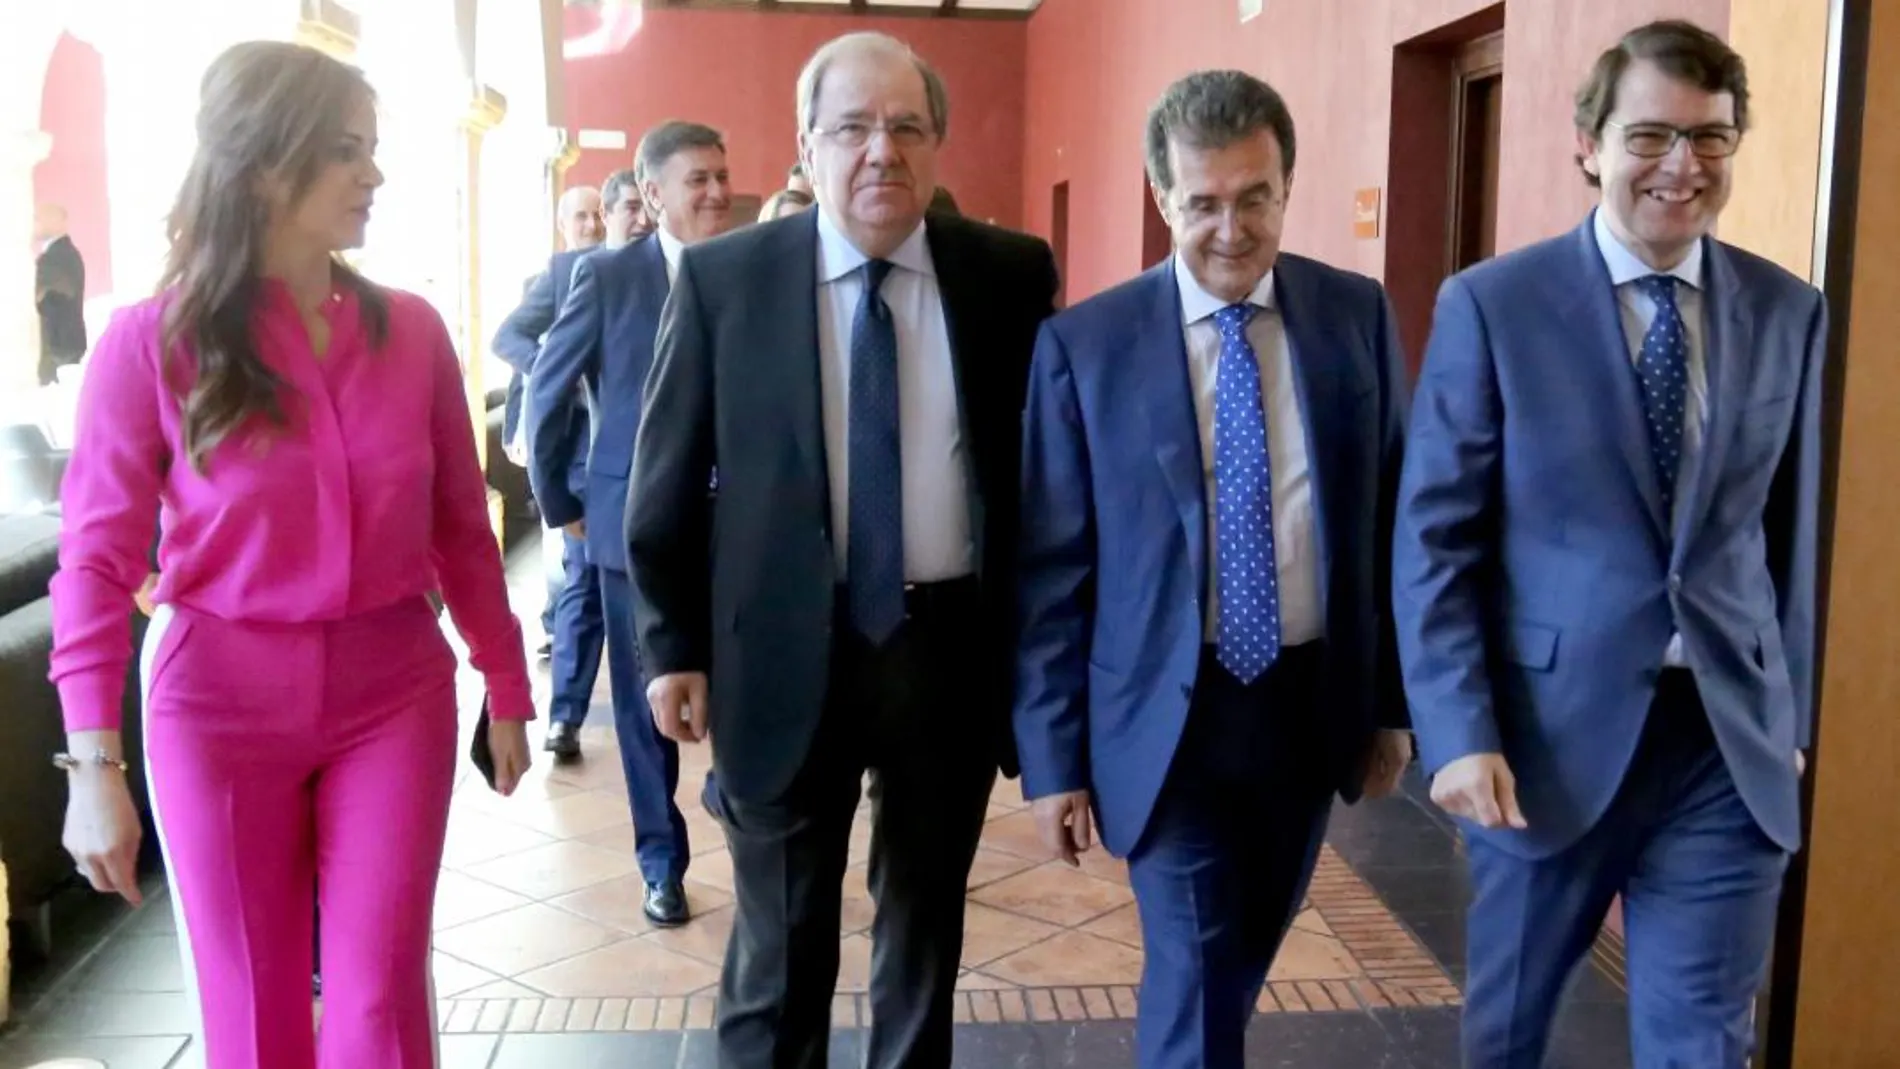 Silvia Clemente, Juan Vicente Herrera, José Luis Ulibarri y Alfonso Fernández Mañueco, antes de comenzar el Club de Prensa